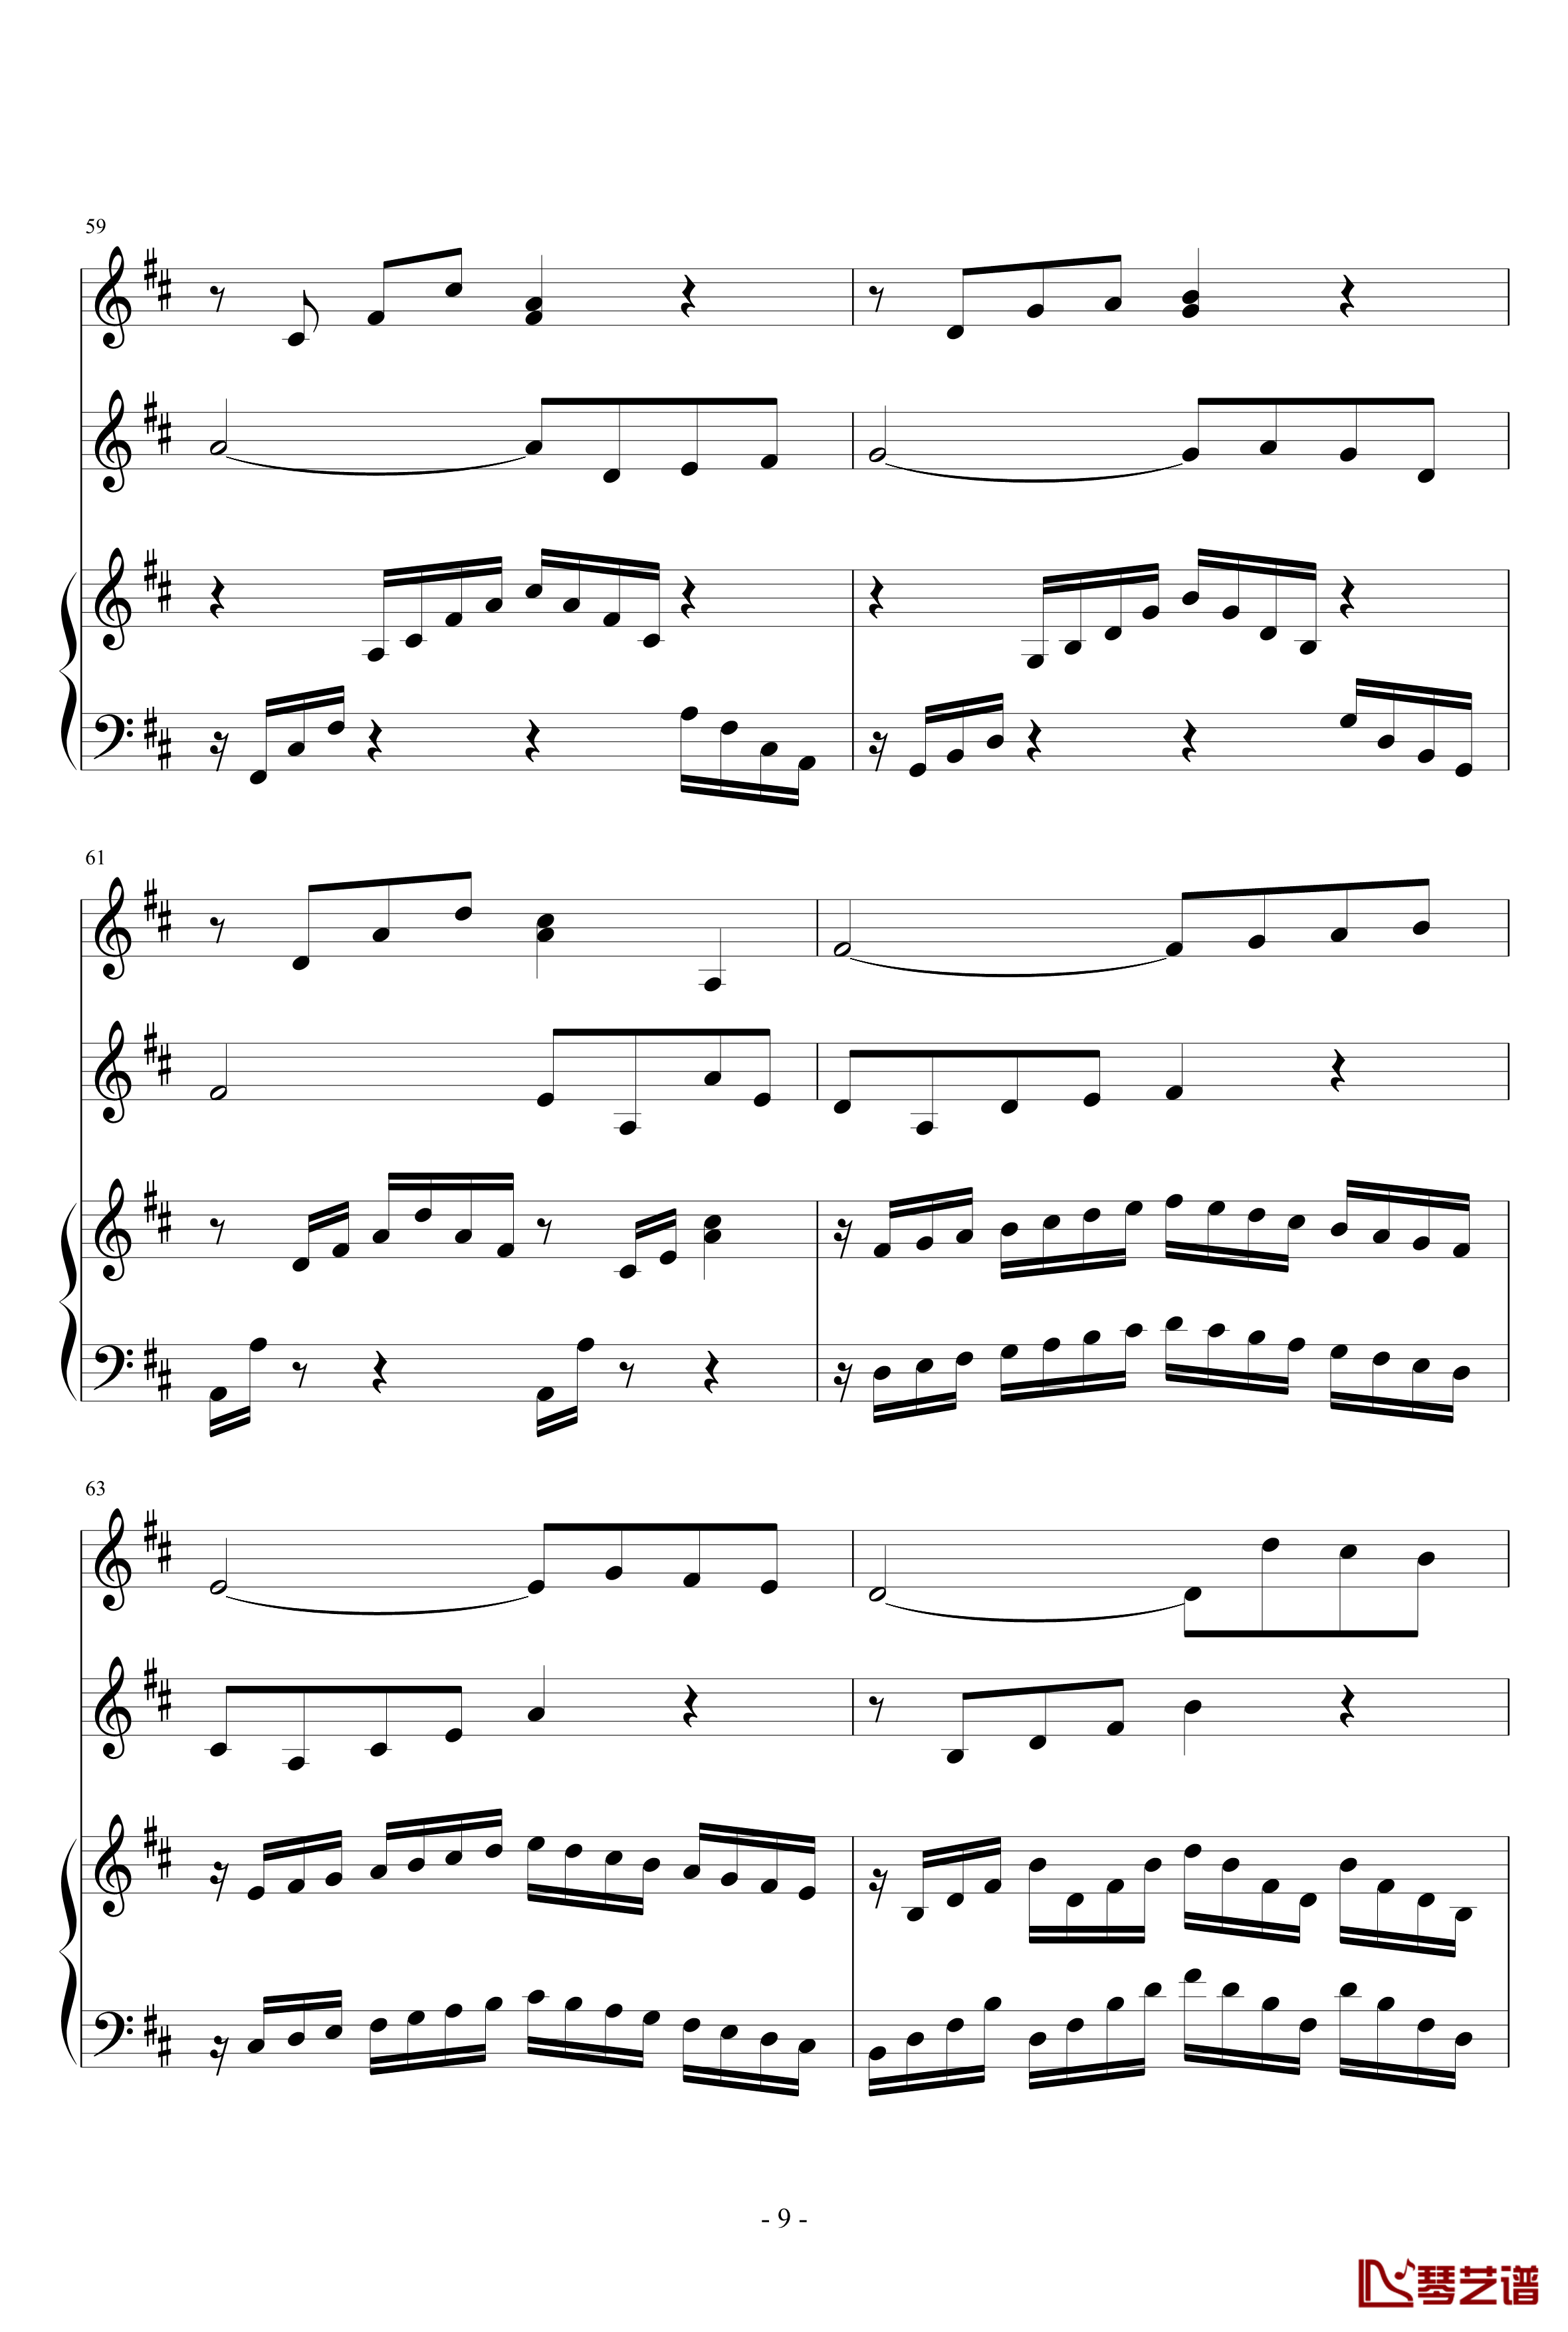 春之歌钢琴谱-nzh1934